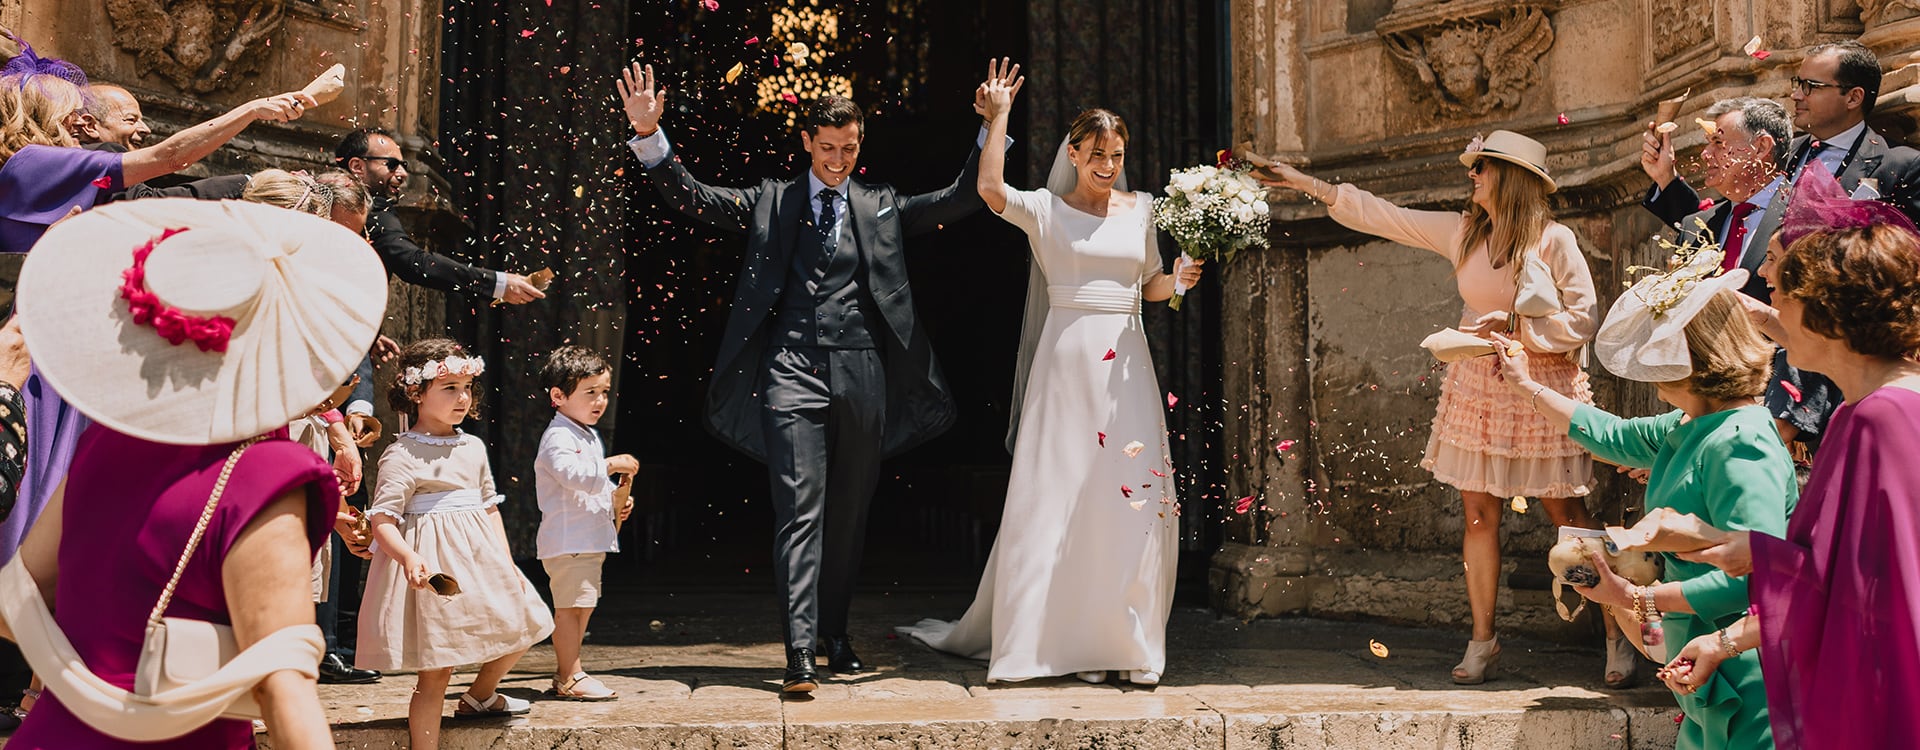 bodas de destino Formentera | organizadores de bodas Mallorca